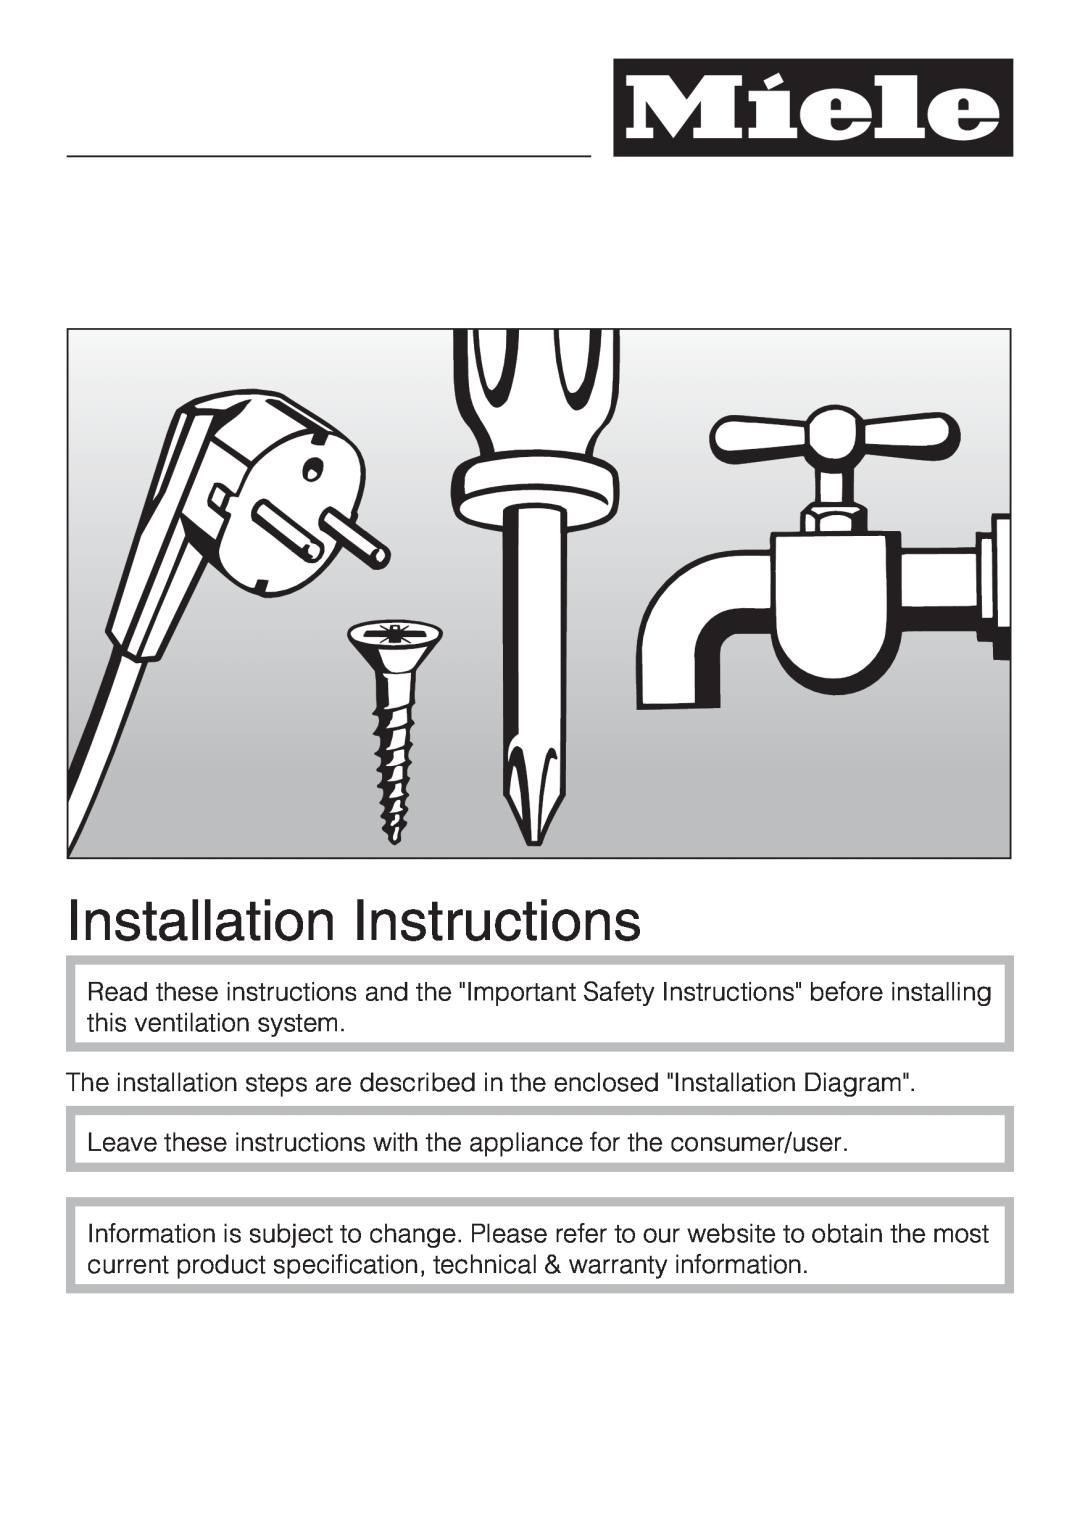 Miele DA 6480, DA 6490, DAG 500, DAG 1000 installation instructions Installation Instructions 